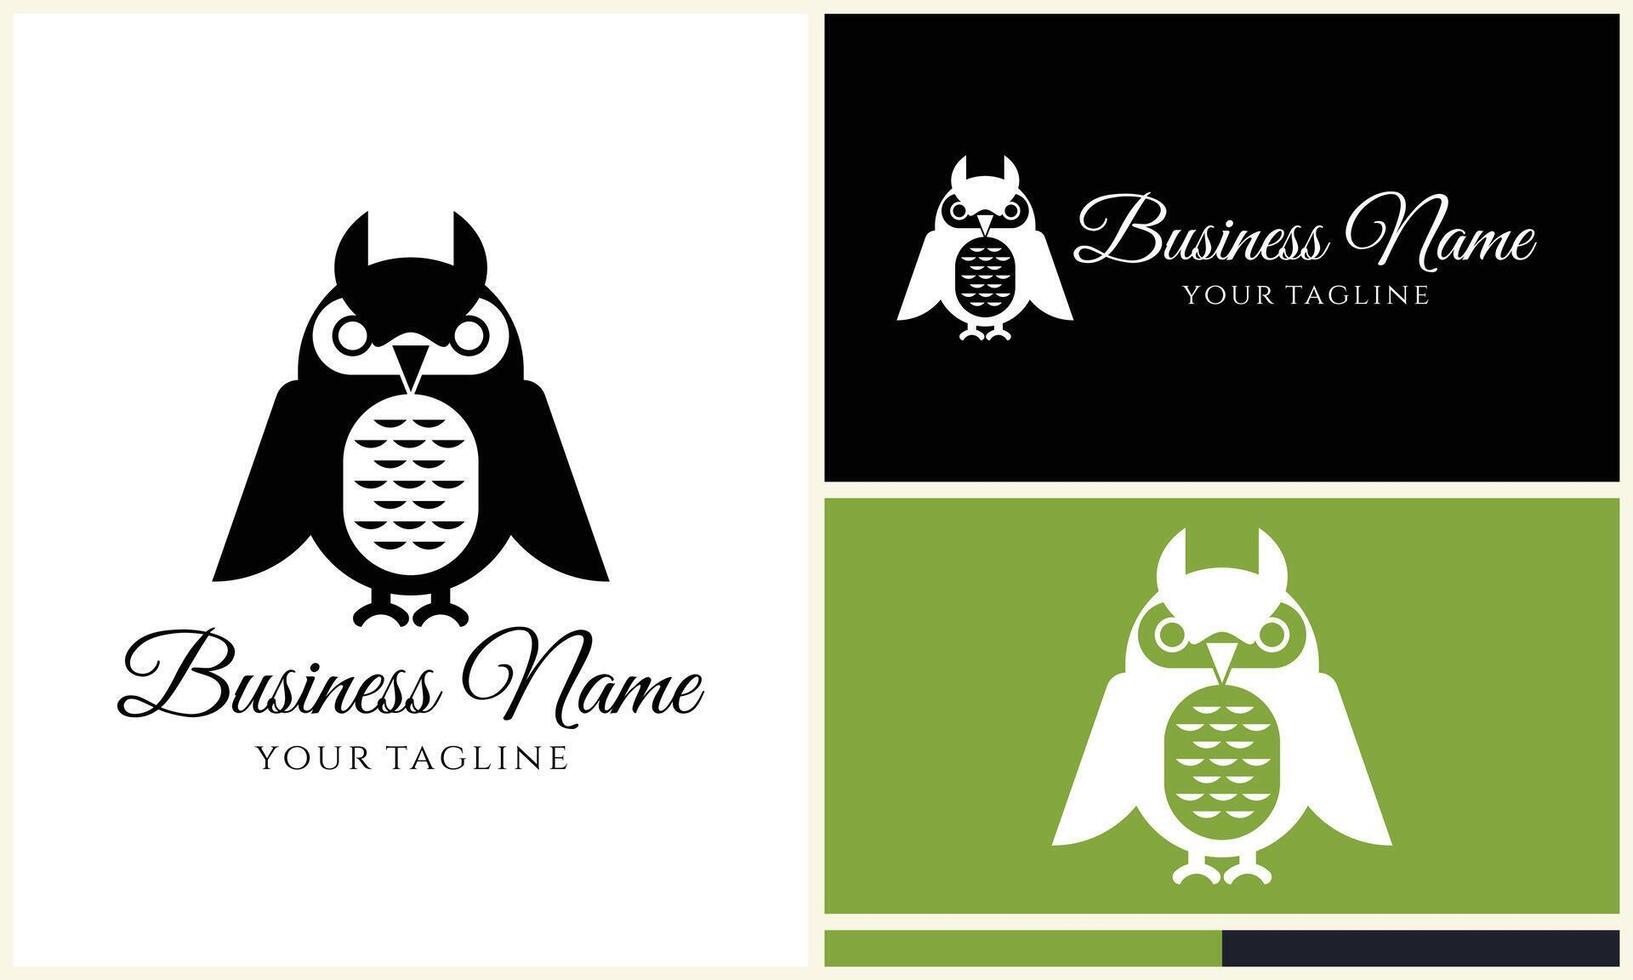 silhouette owl bird logo template vector